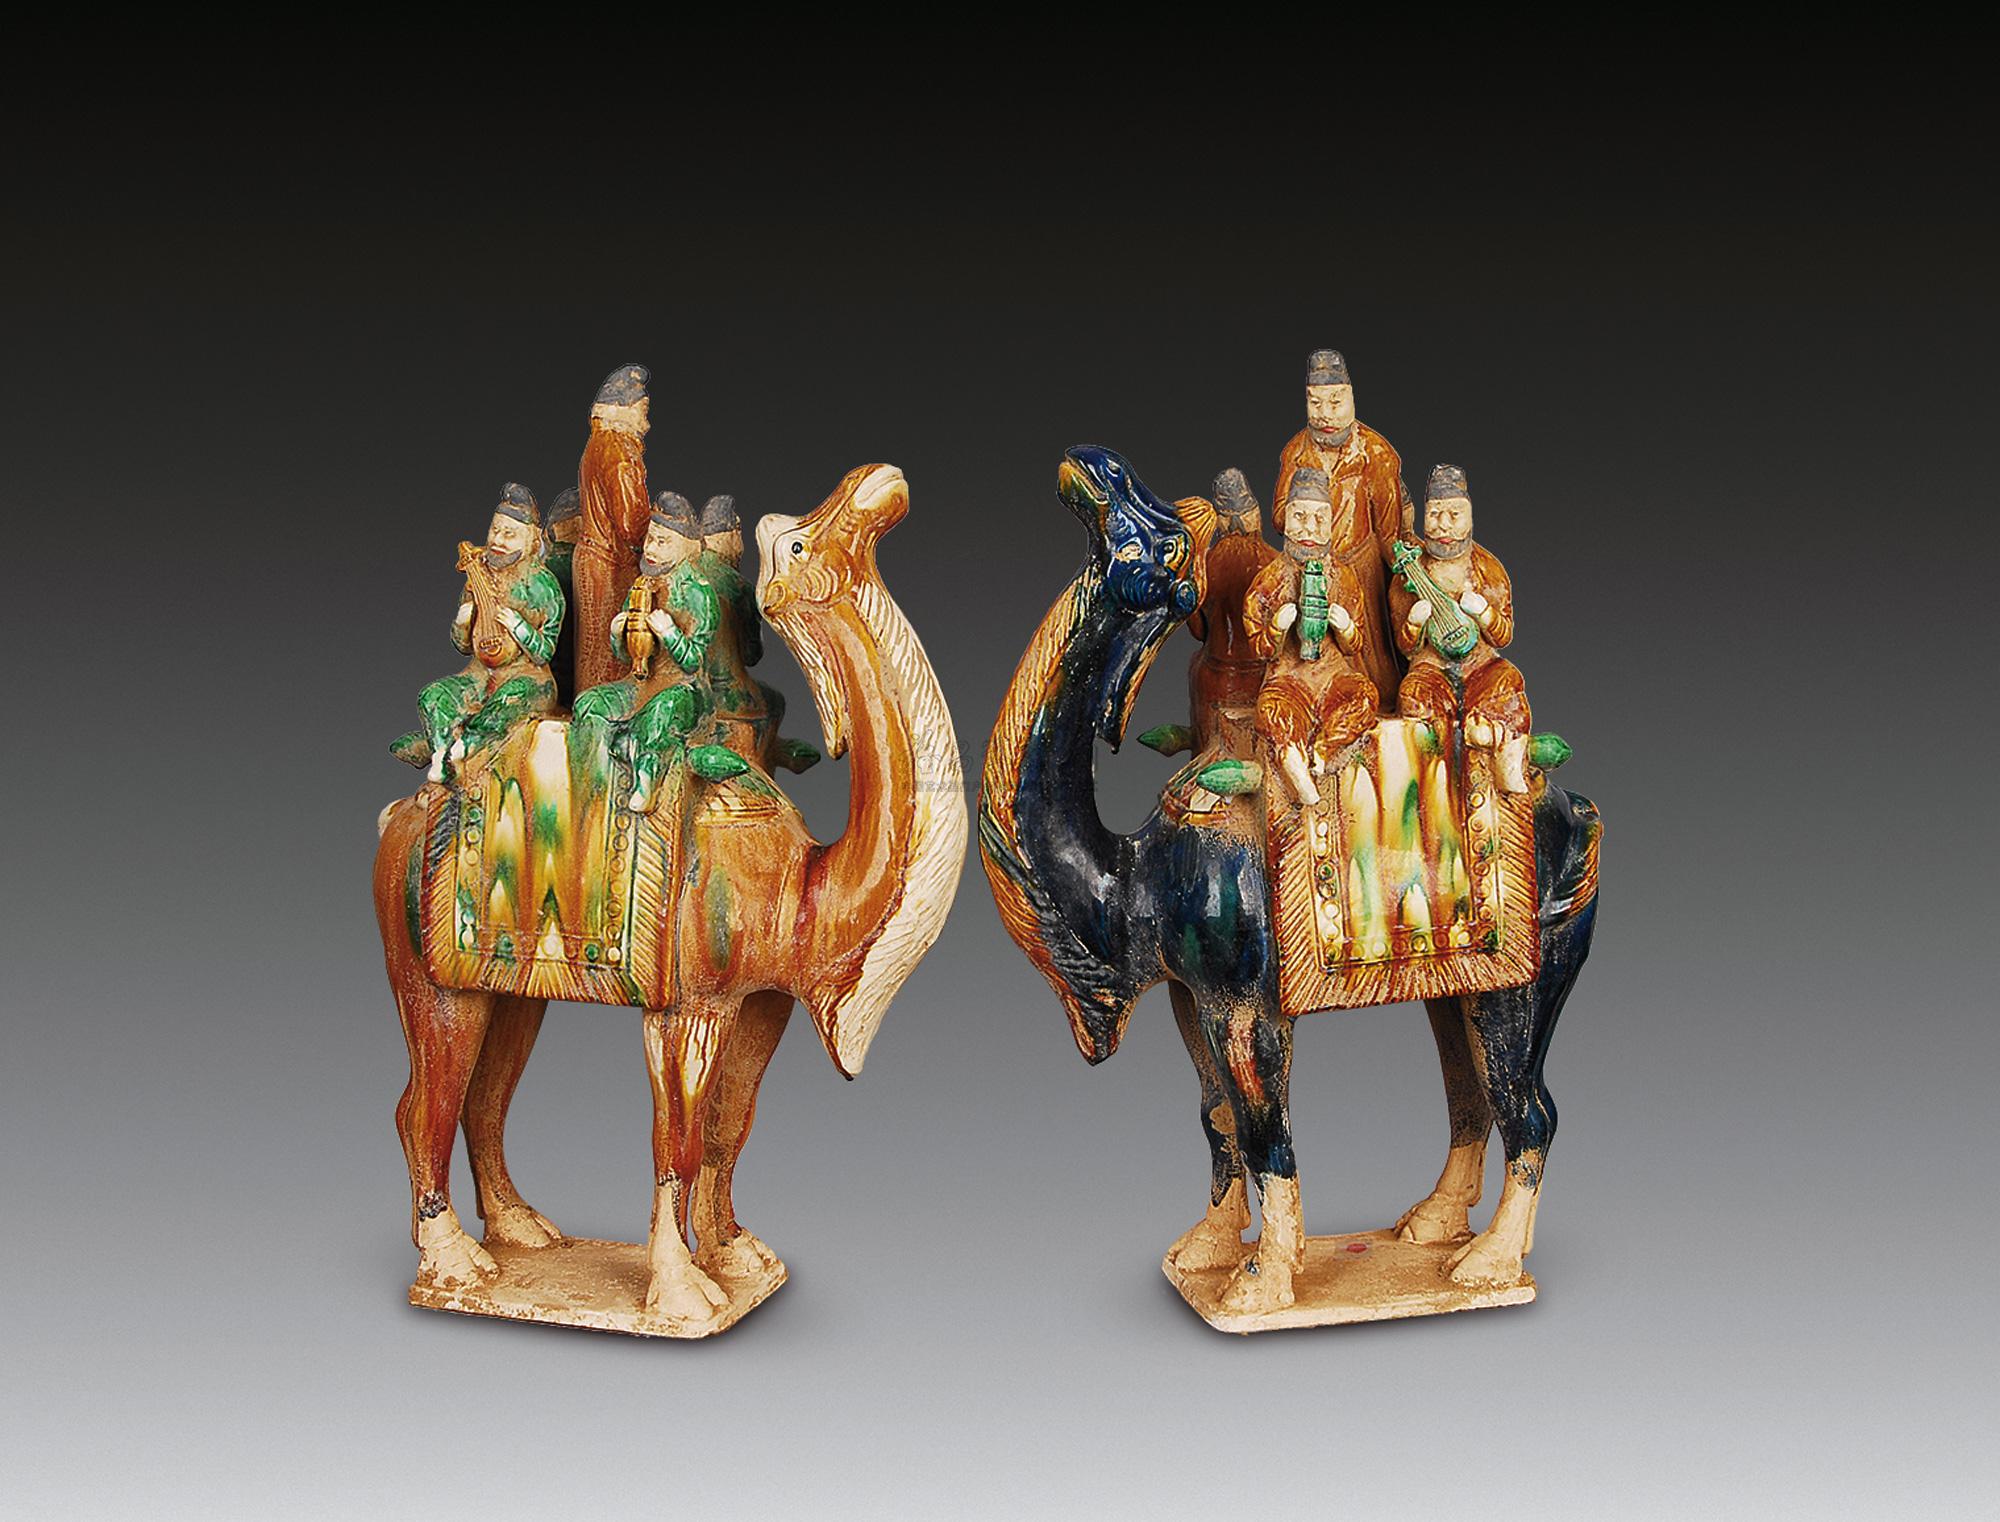 唐朝（618年-907年）是中国历史上文化繁荣的时代，被誉为中国古代陶瓷 